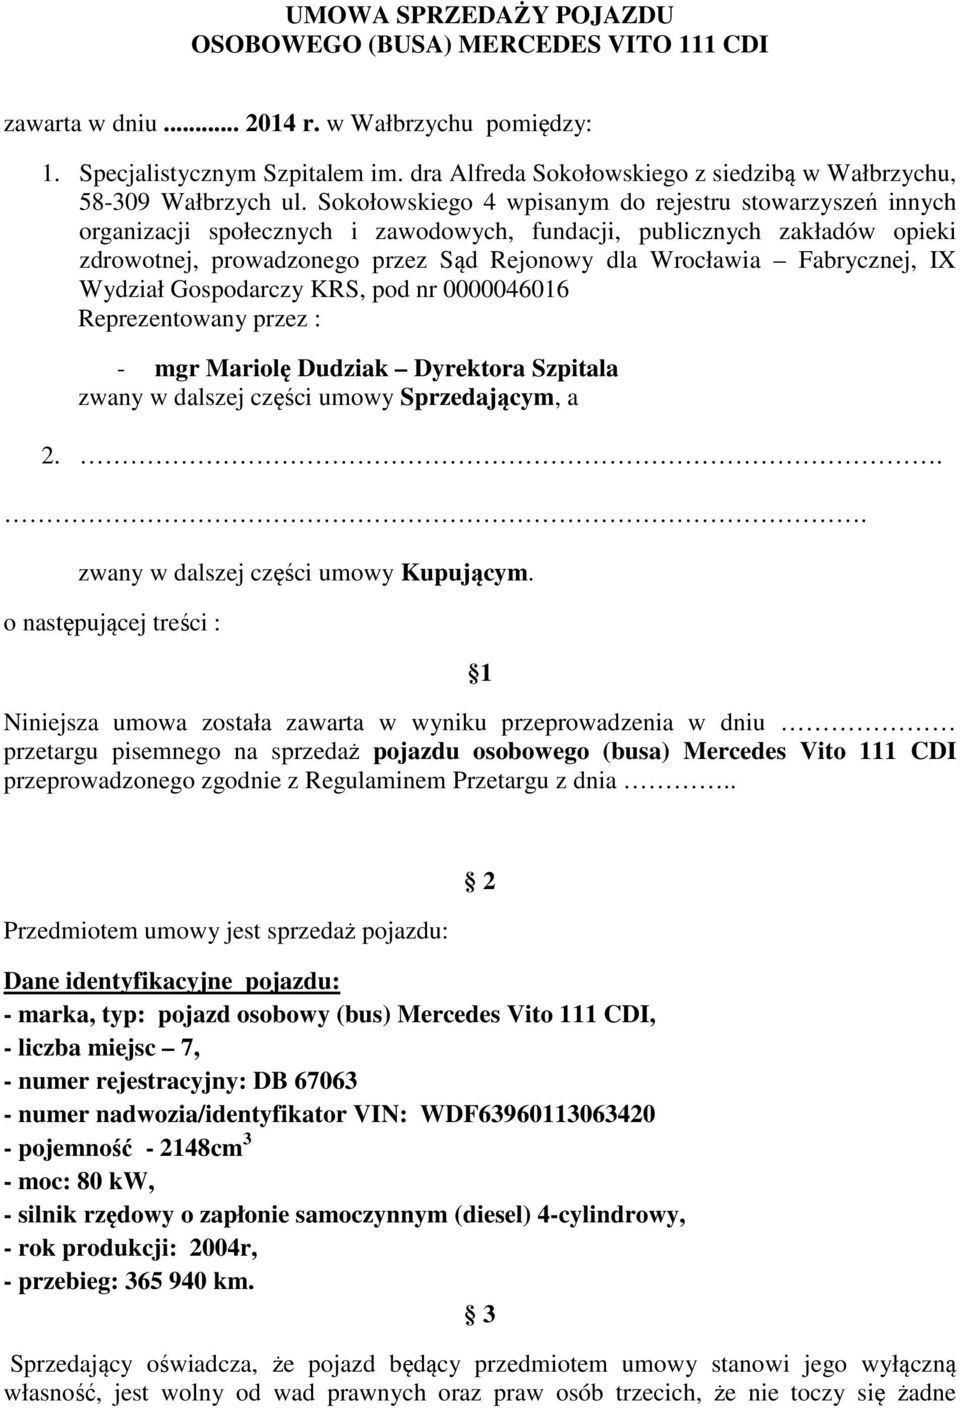 Sokołowskiego 4 wpisanym do rejestru stowarzyszeń innych organizacji społecznych i zawodowych, fundacji, publicznych zakładów opieki zdrowotnej, prowadzonego przez Sąd Rejonowy dla Wrocławia